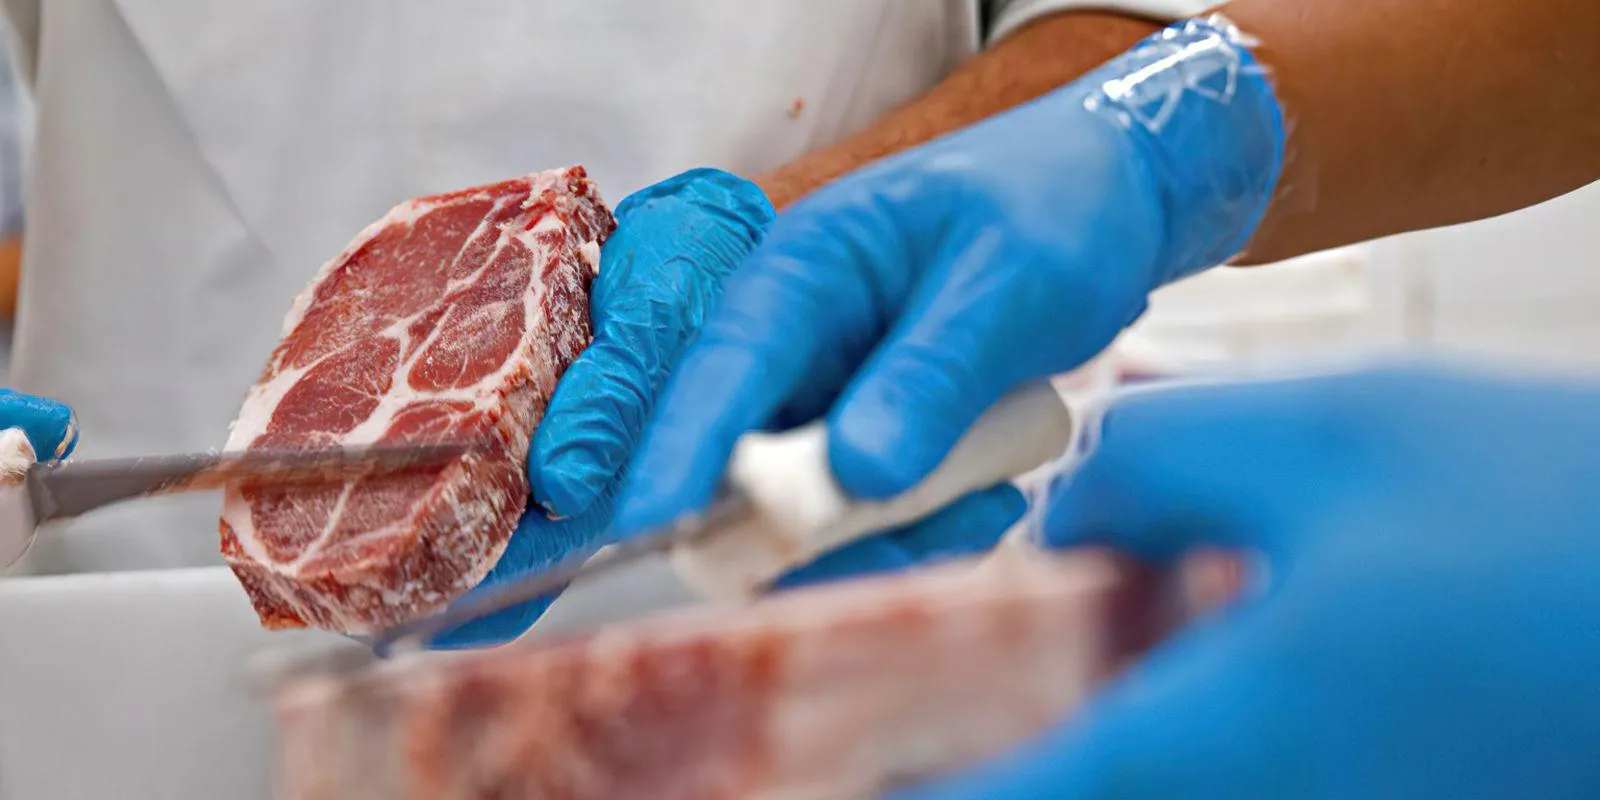 Conab prevê aumento na produção de carnes e impacto nos preços